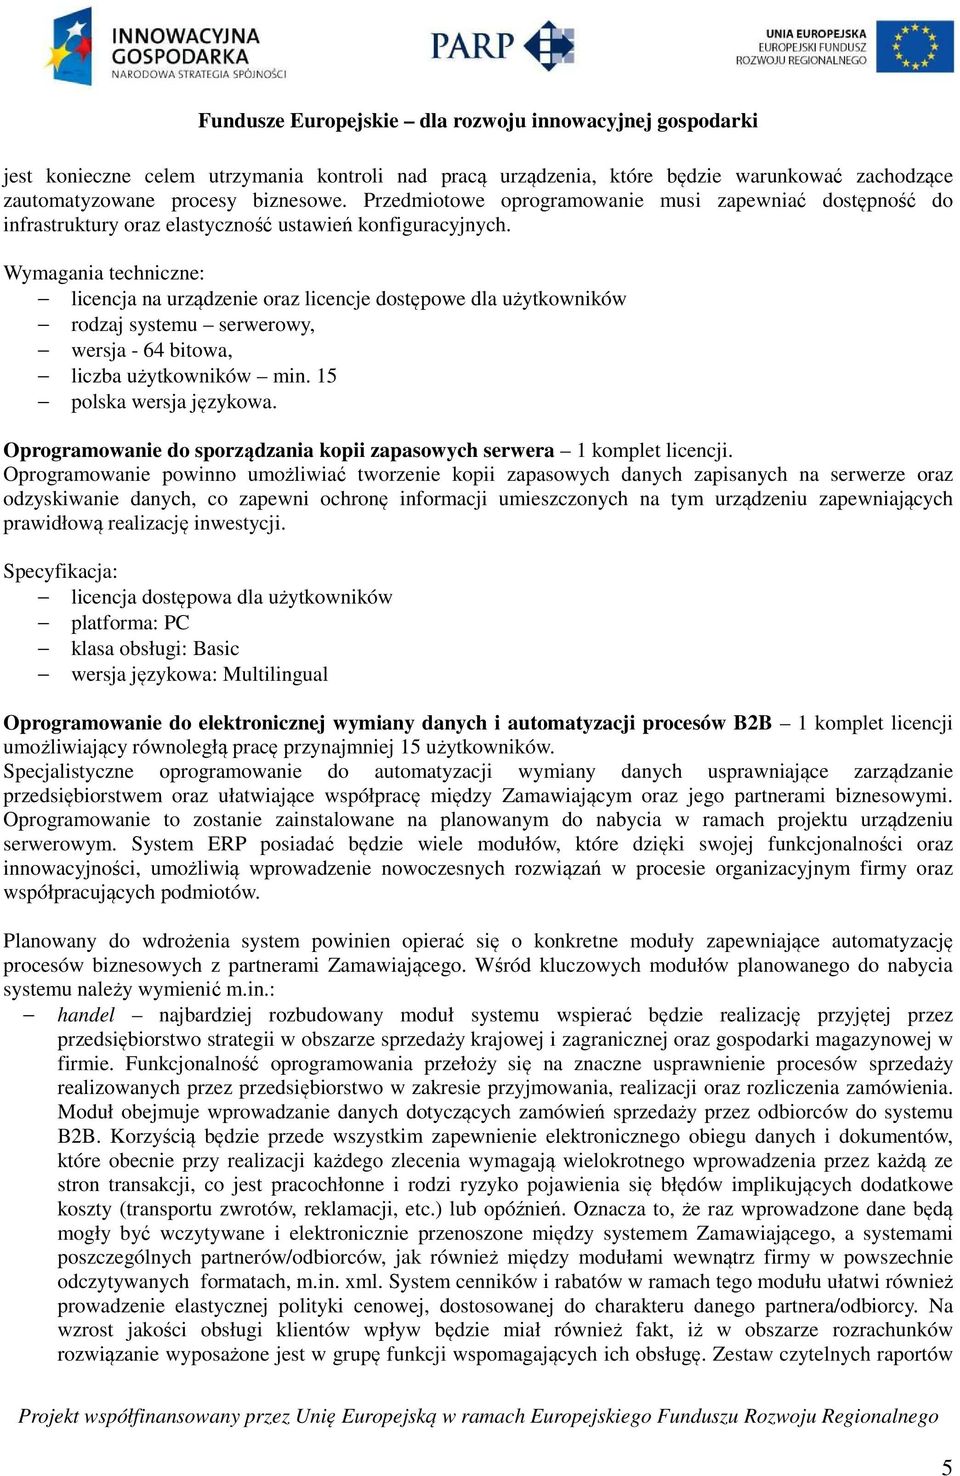 Wymagania techniczne: licencja na urządzenie oraz licencje dostępowe dla użytkowników rodzaj systemu serwerowy, wersja - 64 bitowa, liczba użytkowników min. 15 polska wersja językowa.